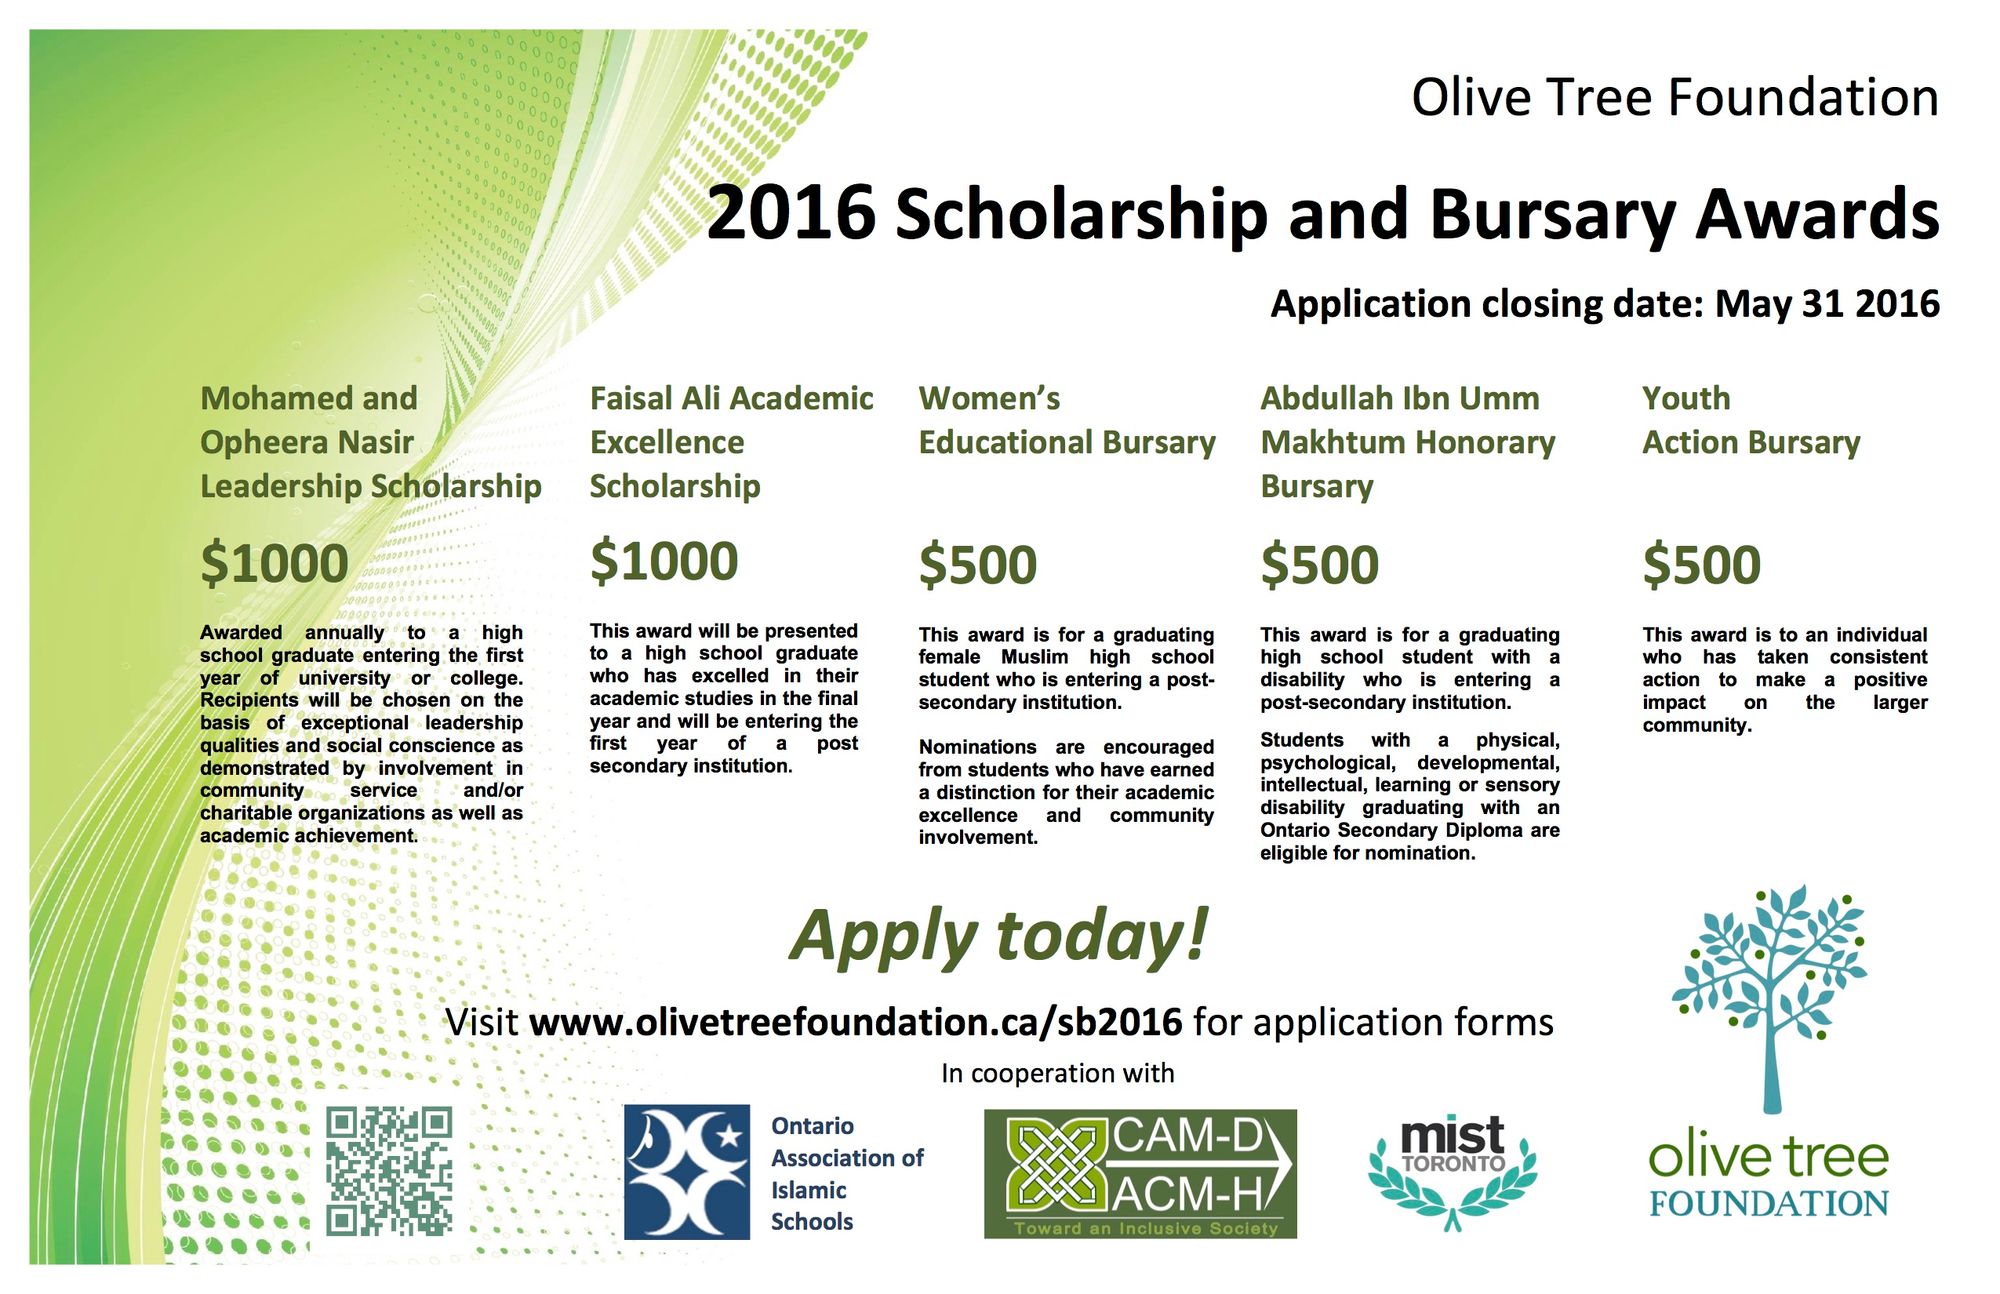 Olive Tree Foundation 2016 Scholarship and Bursary Awards Deadline May 31 2016